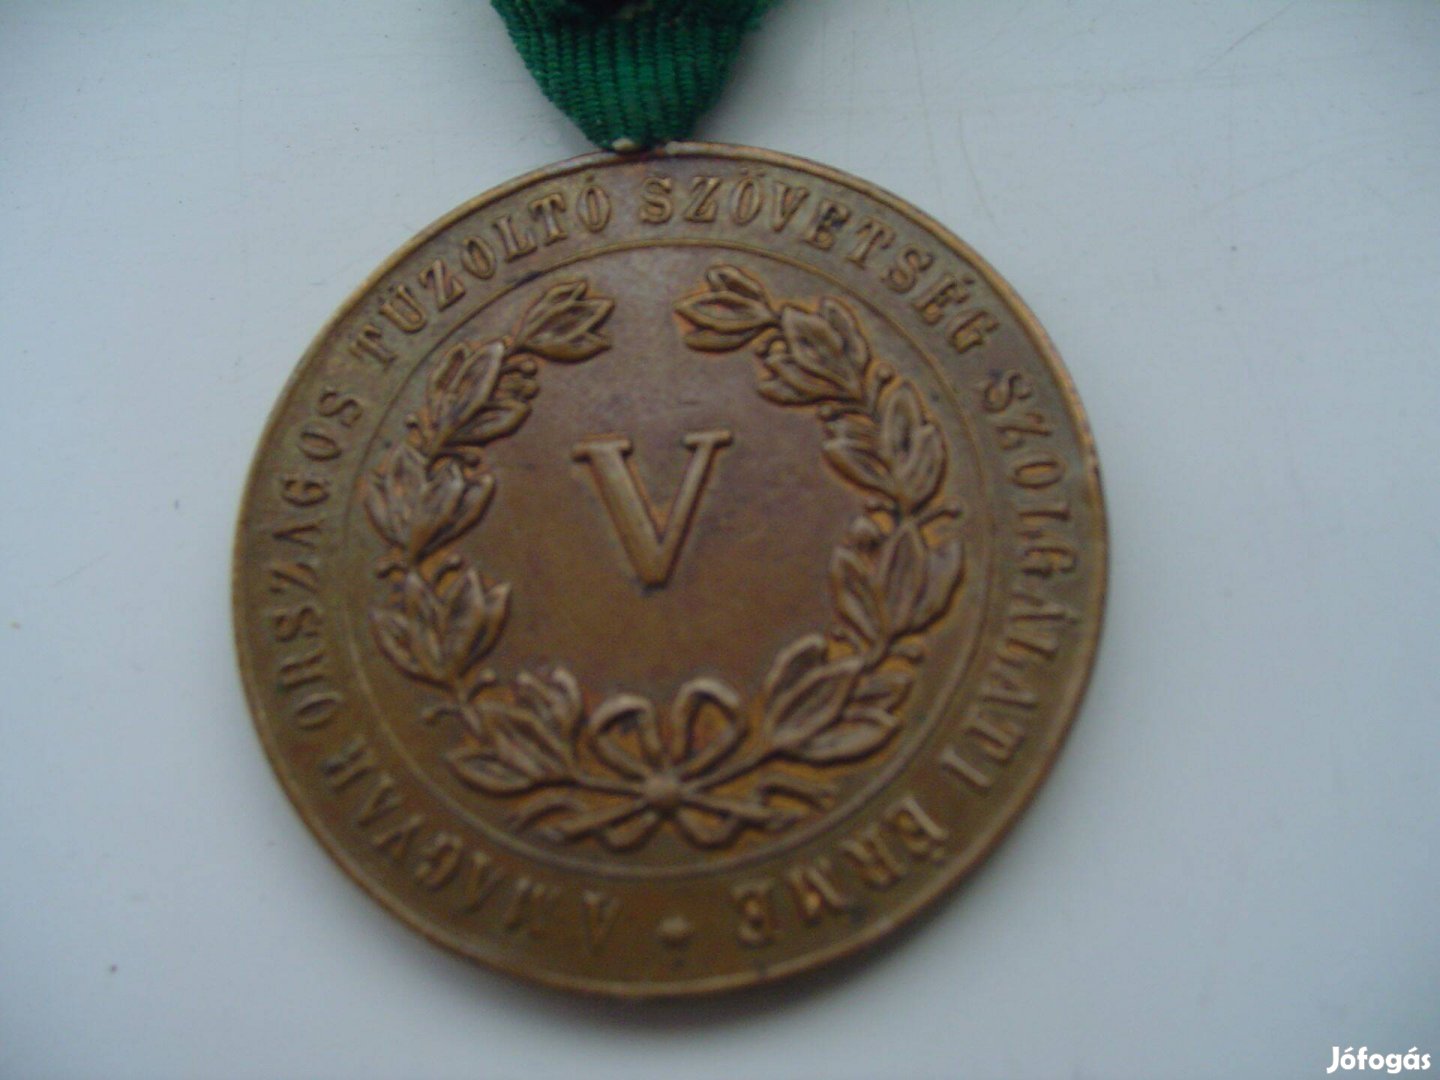 Tűzoltók V éves Szolgálati kitüntetése 1884